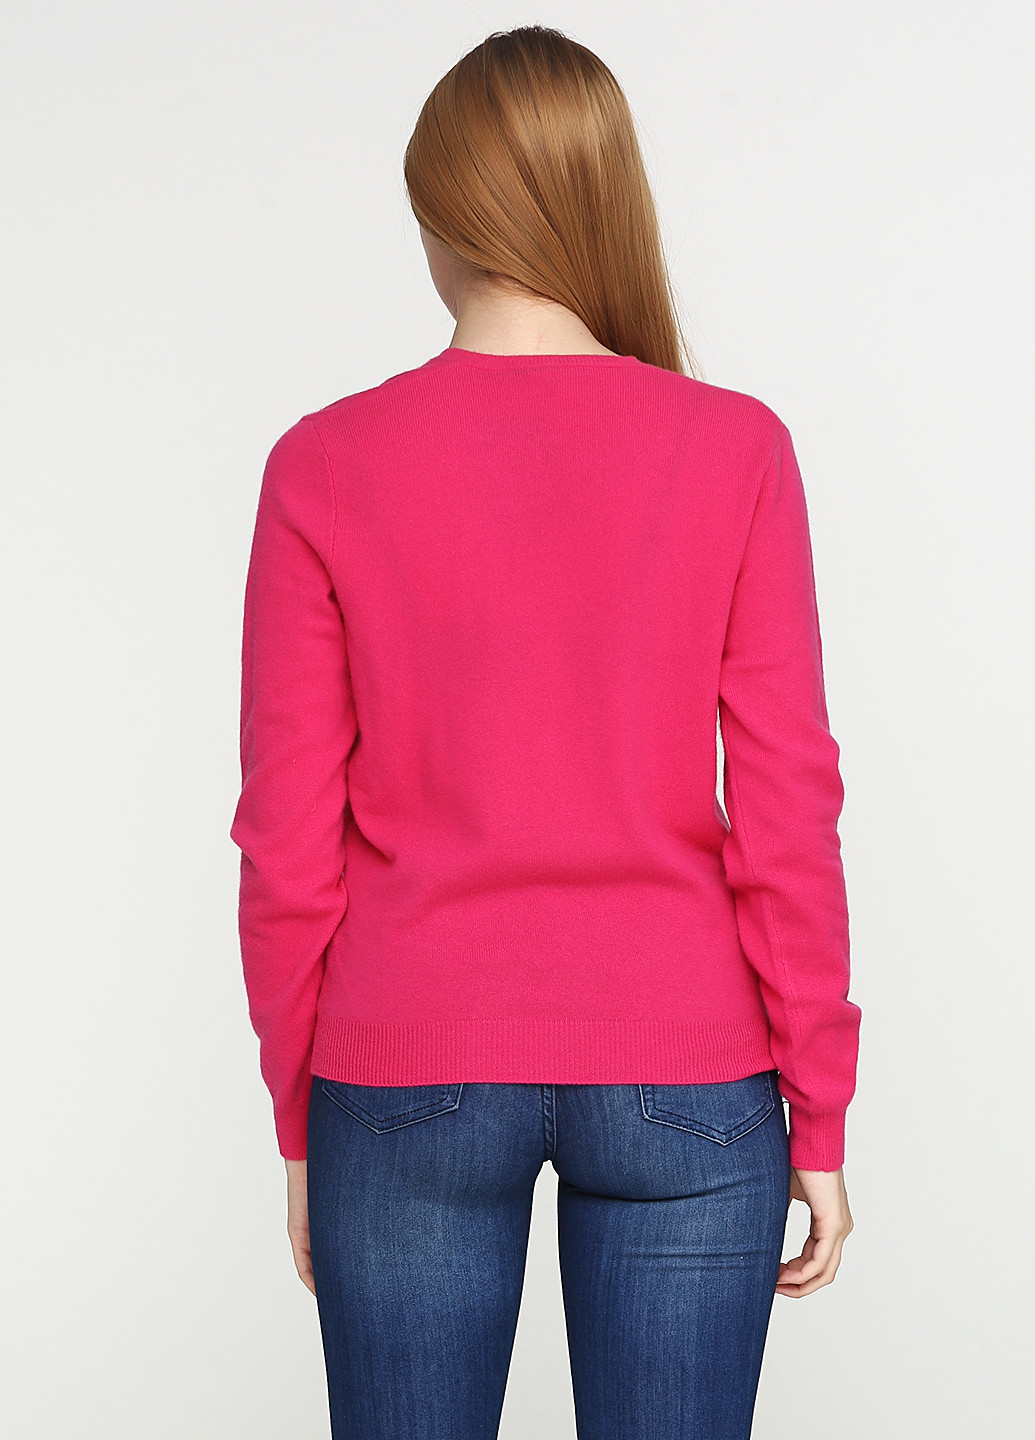 Розовый демисезонный пуловер пуловер Ralph Lauren